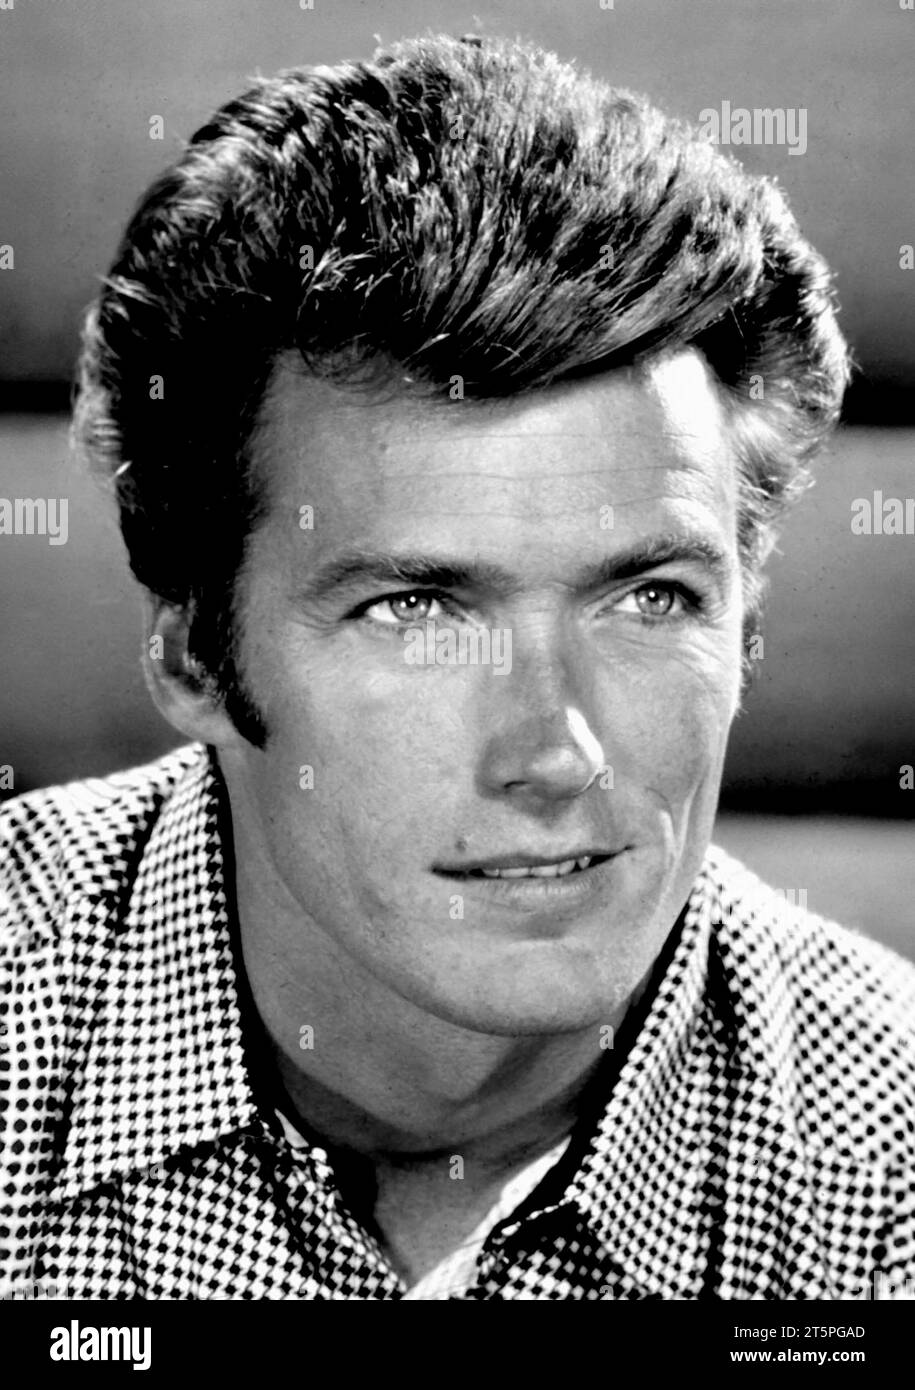 Clint Eastwood. Portait des amerikanischen Schauspielers und Regisseurs Clinton Eastwood Jr. (* 1930), Publicity still, 1960er Jahre Stockfoto